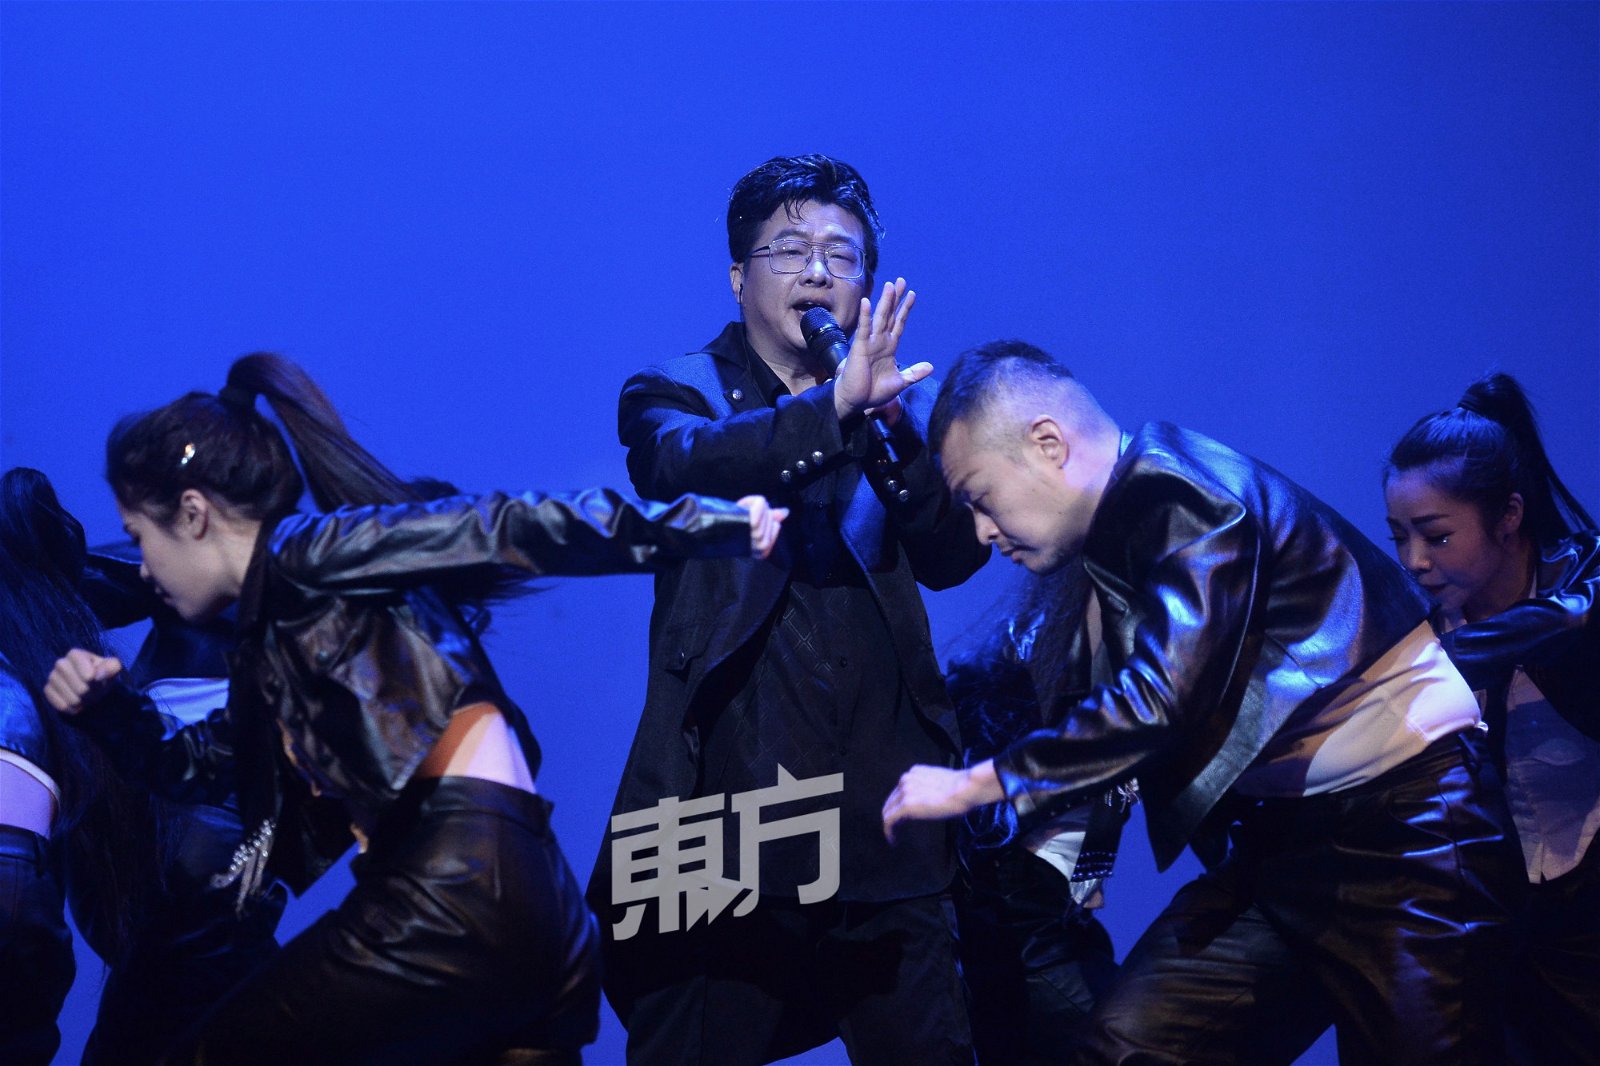 企业家颜生建推出第三首单曲《我要谢谢》挑战唱跳。